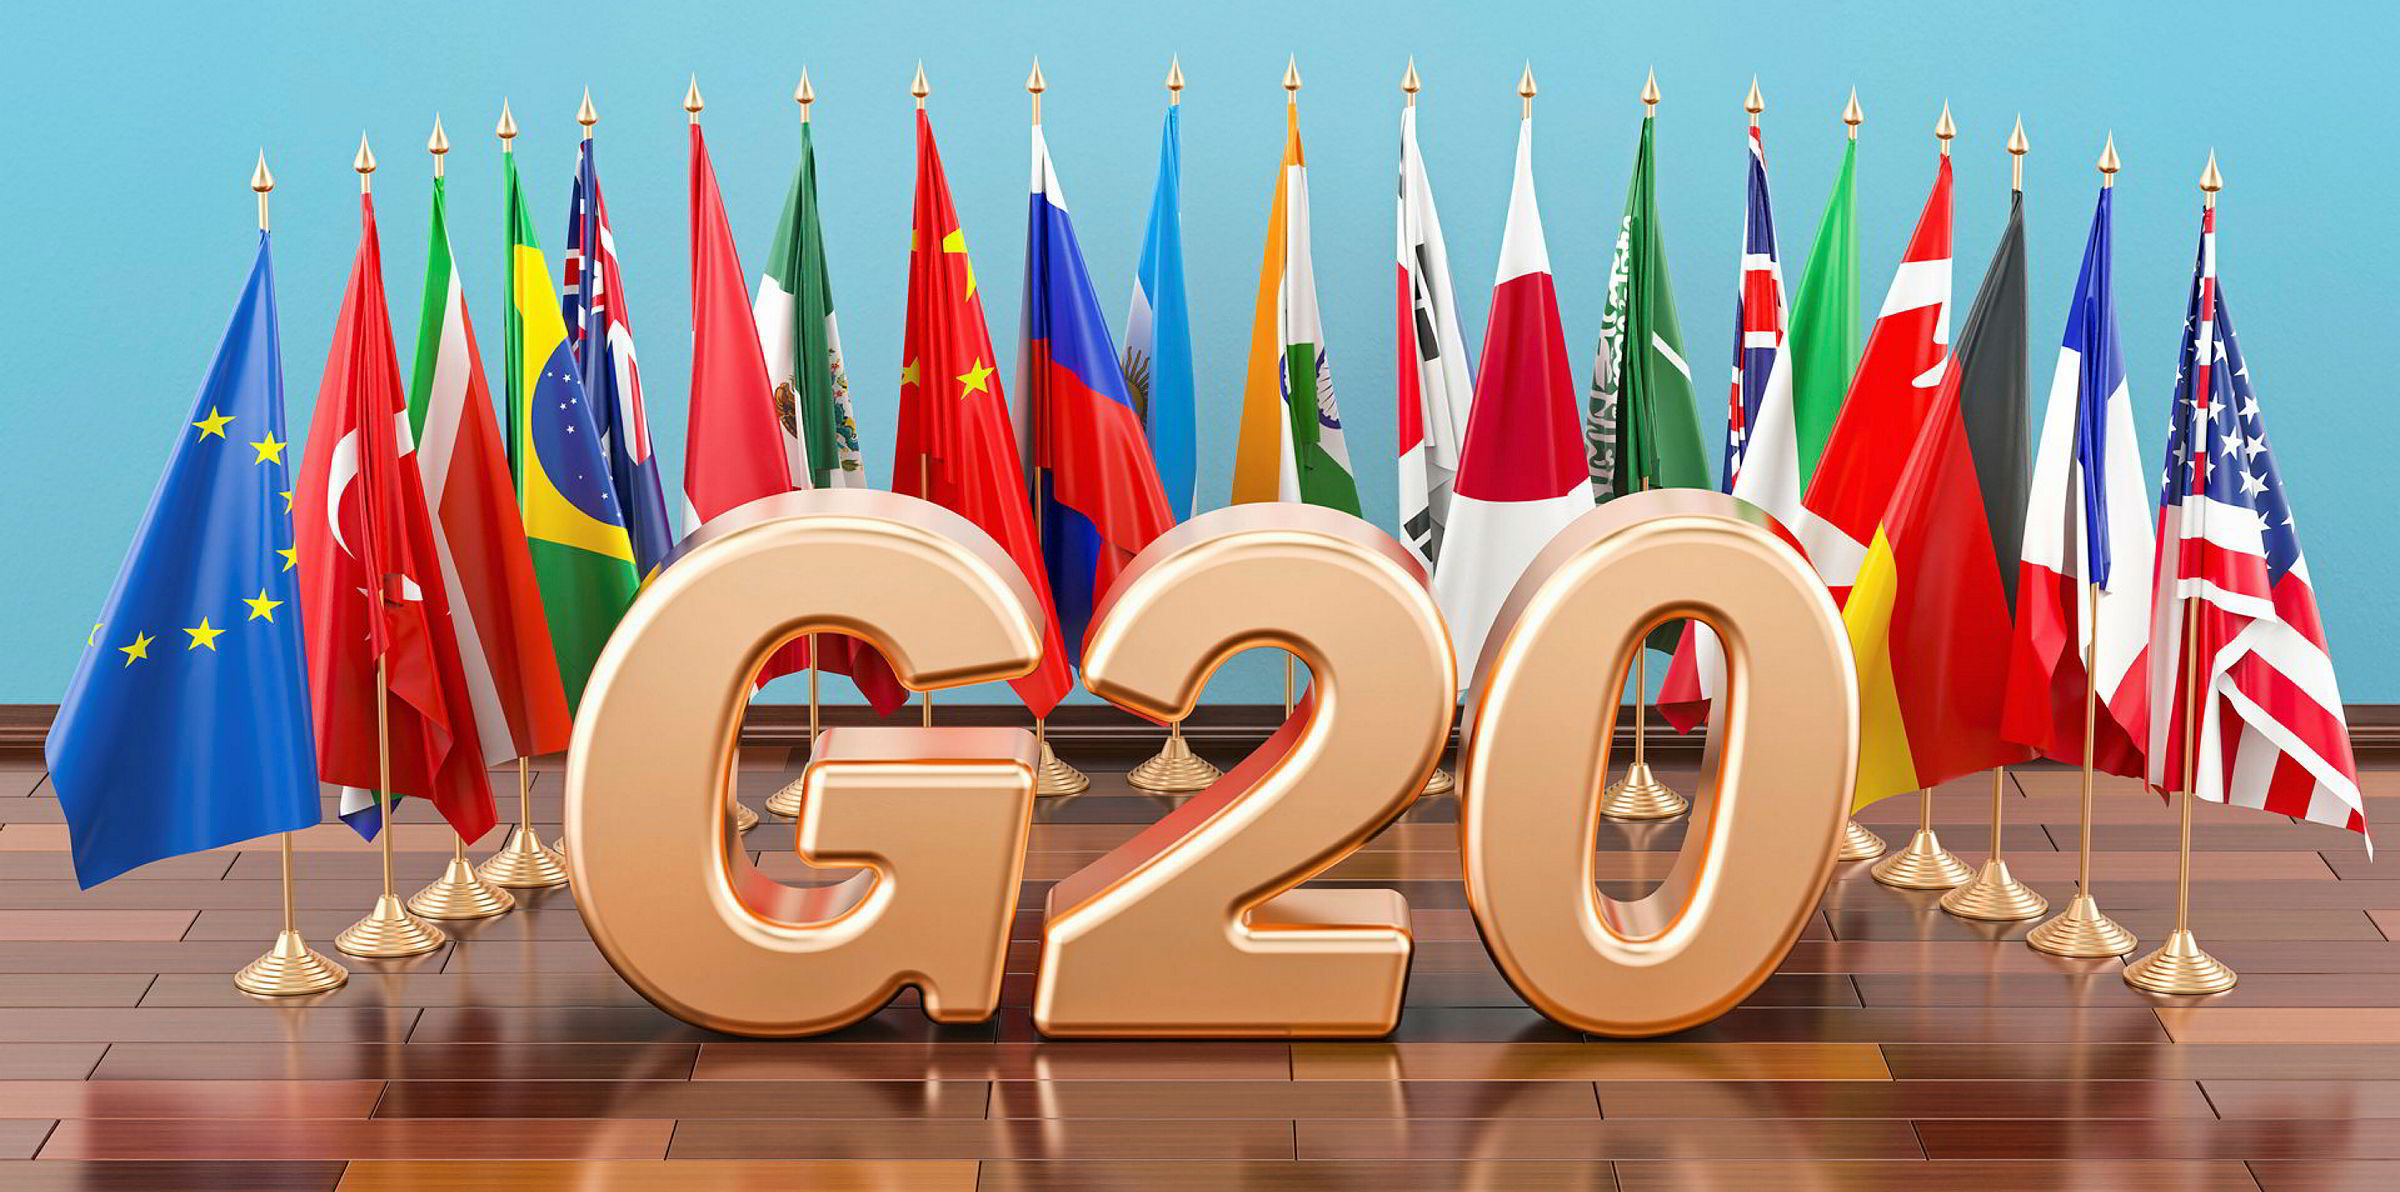 СМИ: Путин и Зеленский дали согласие приехать на саммит G20 в Индонезии